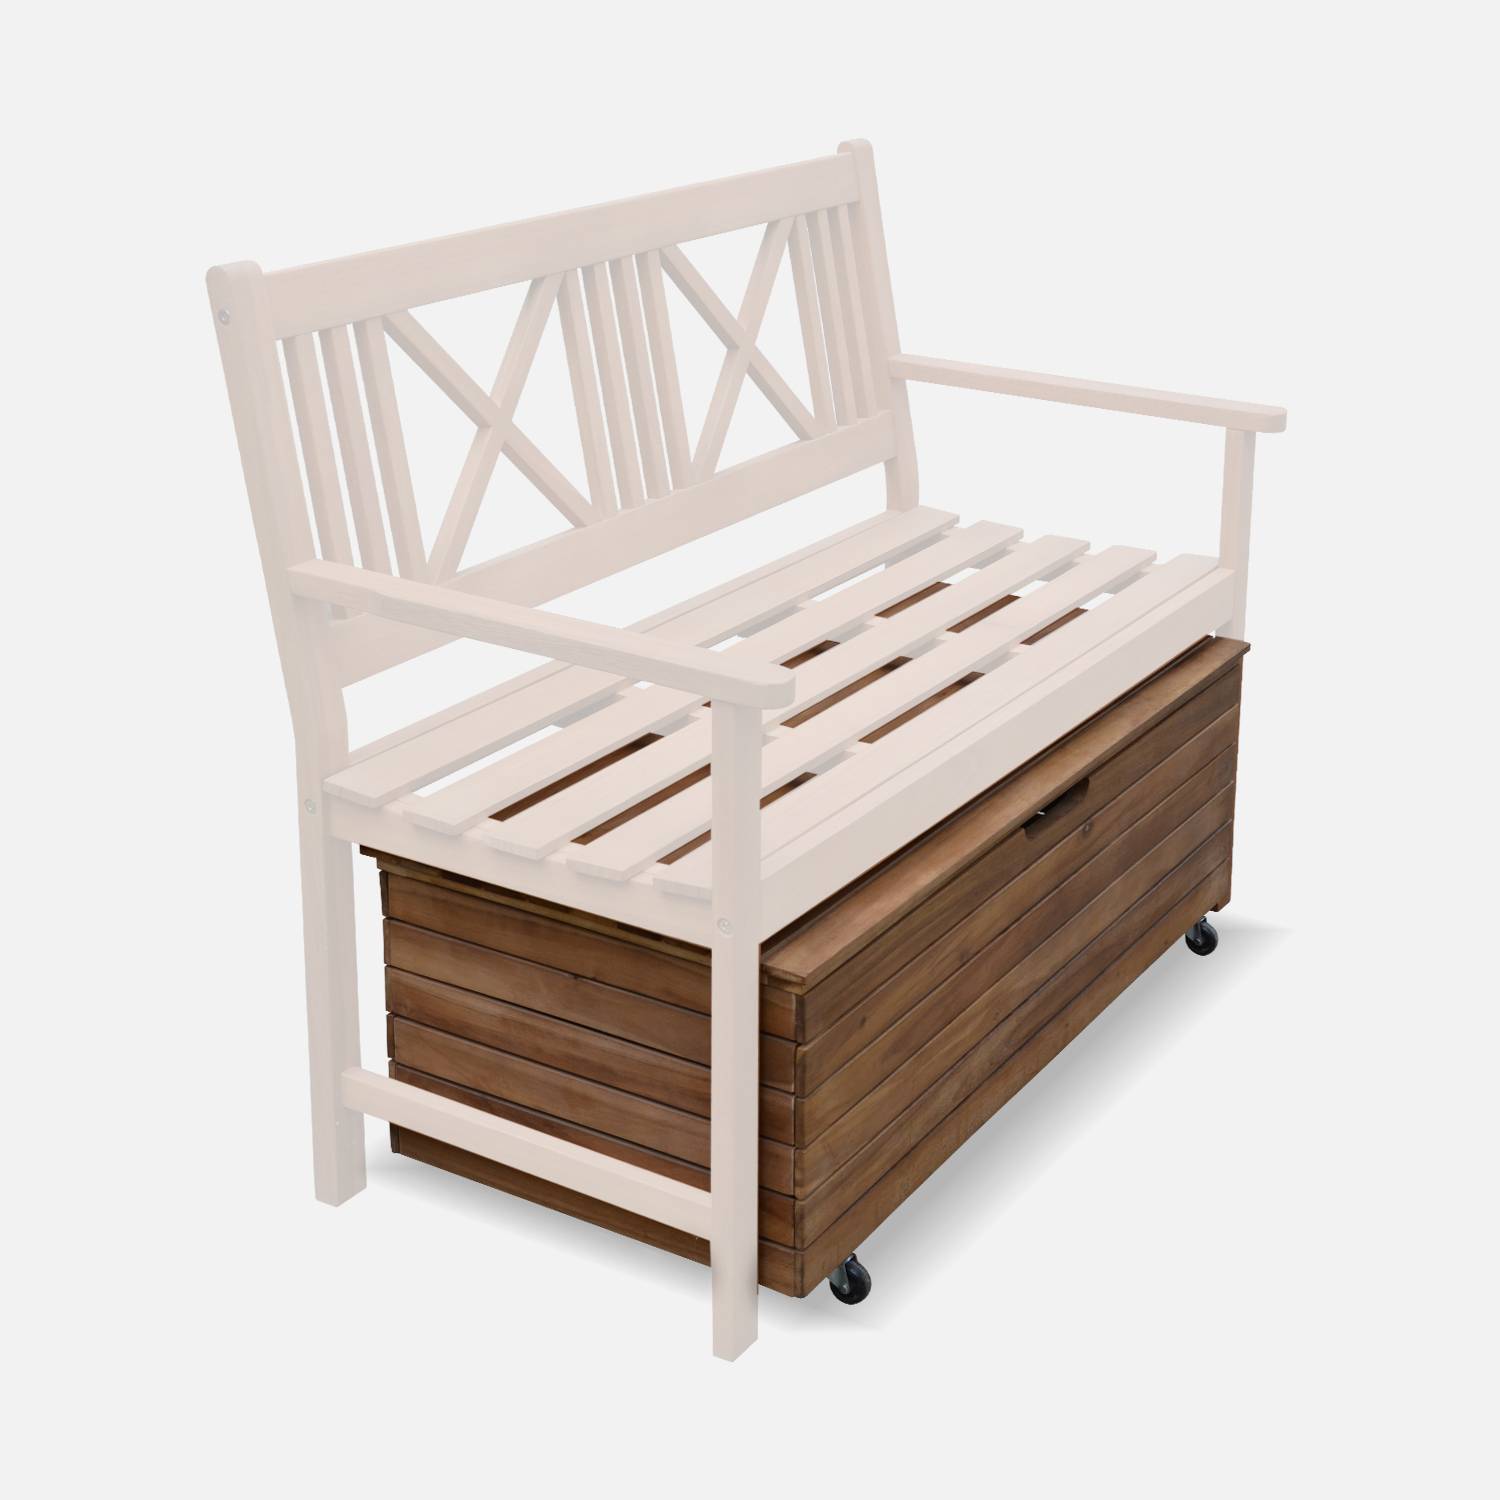 Baule da giardino in legno | Saragosse - 110L | Baule per riporre i cuscini 107x48,5cm con martinetti e rotelle Photo6